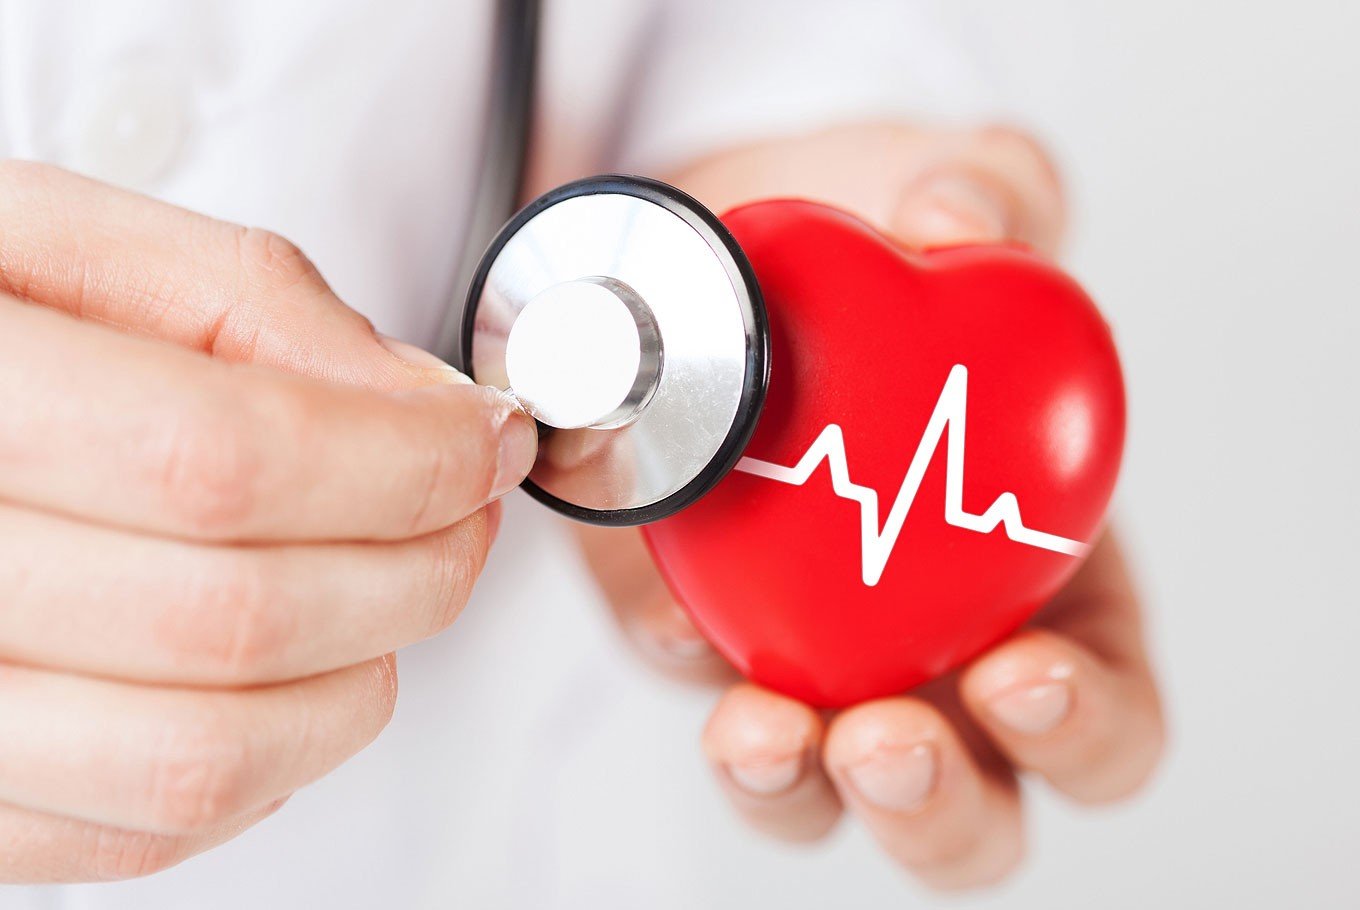 szívkoszorúér-betegség egészségügyi kockázatai